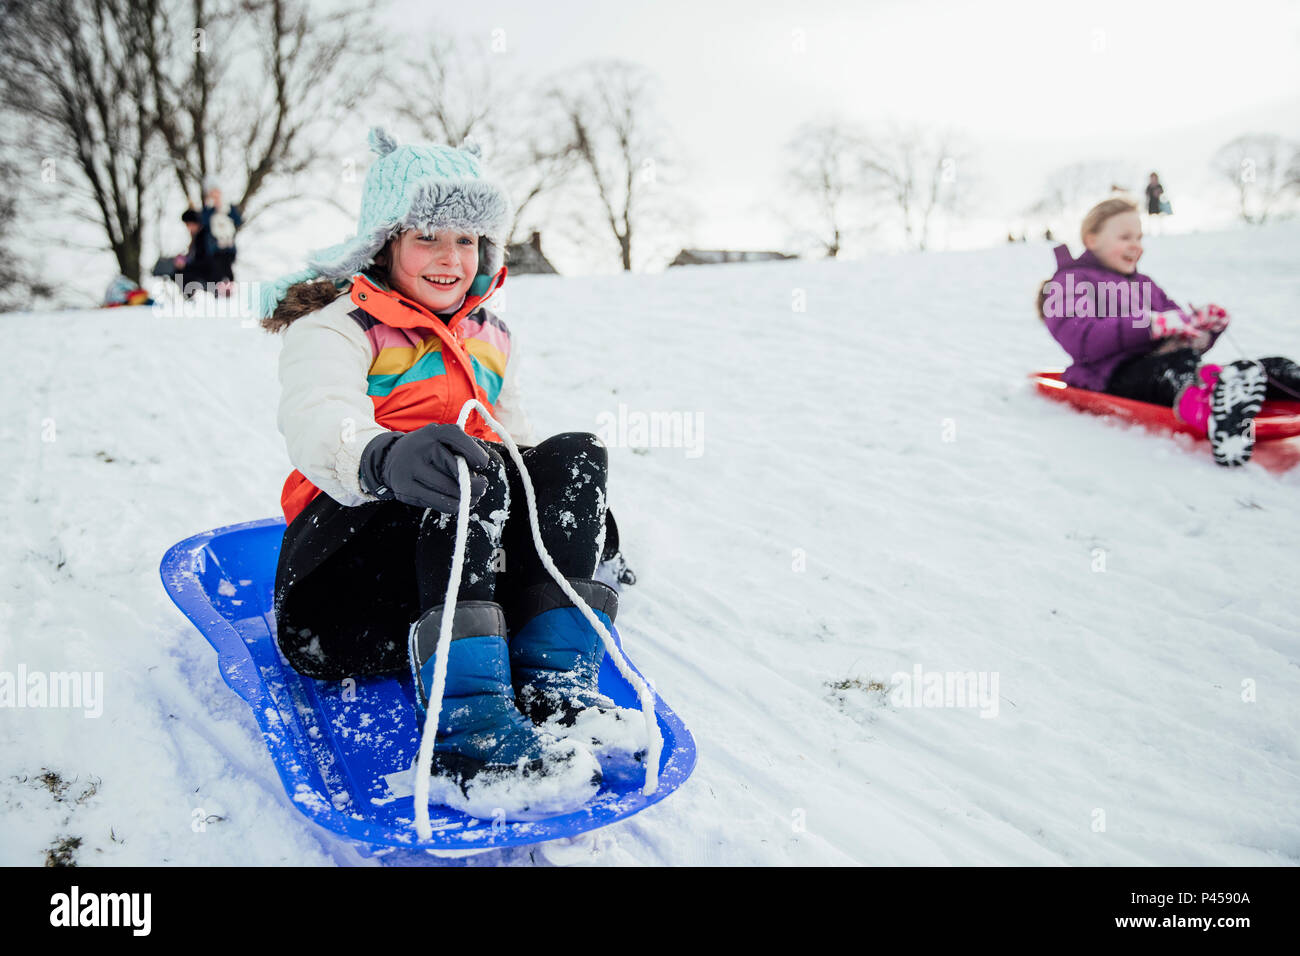 Immagine ravvicinata di una bambina su una slitta di neve in una gara della comunità. Foto Stock